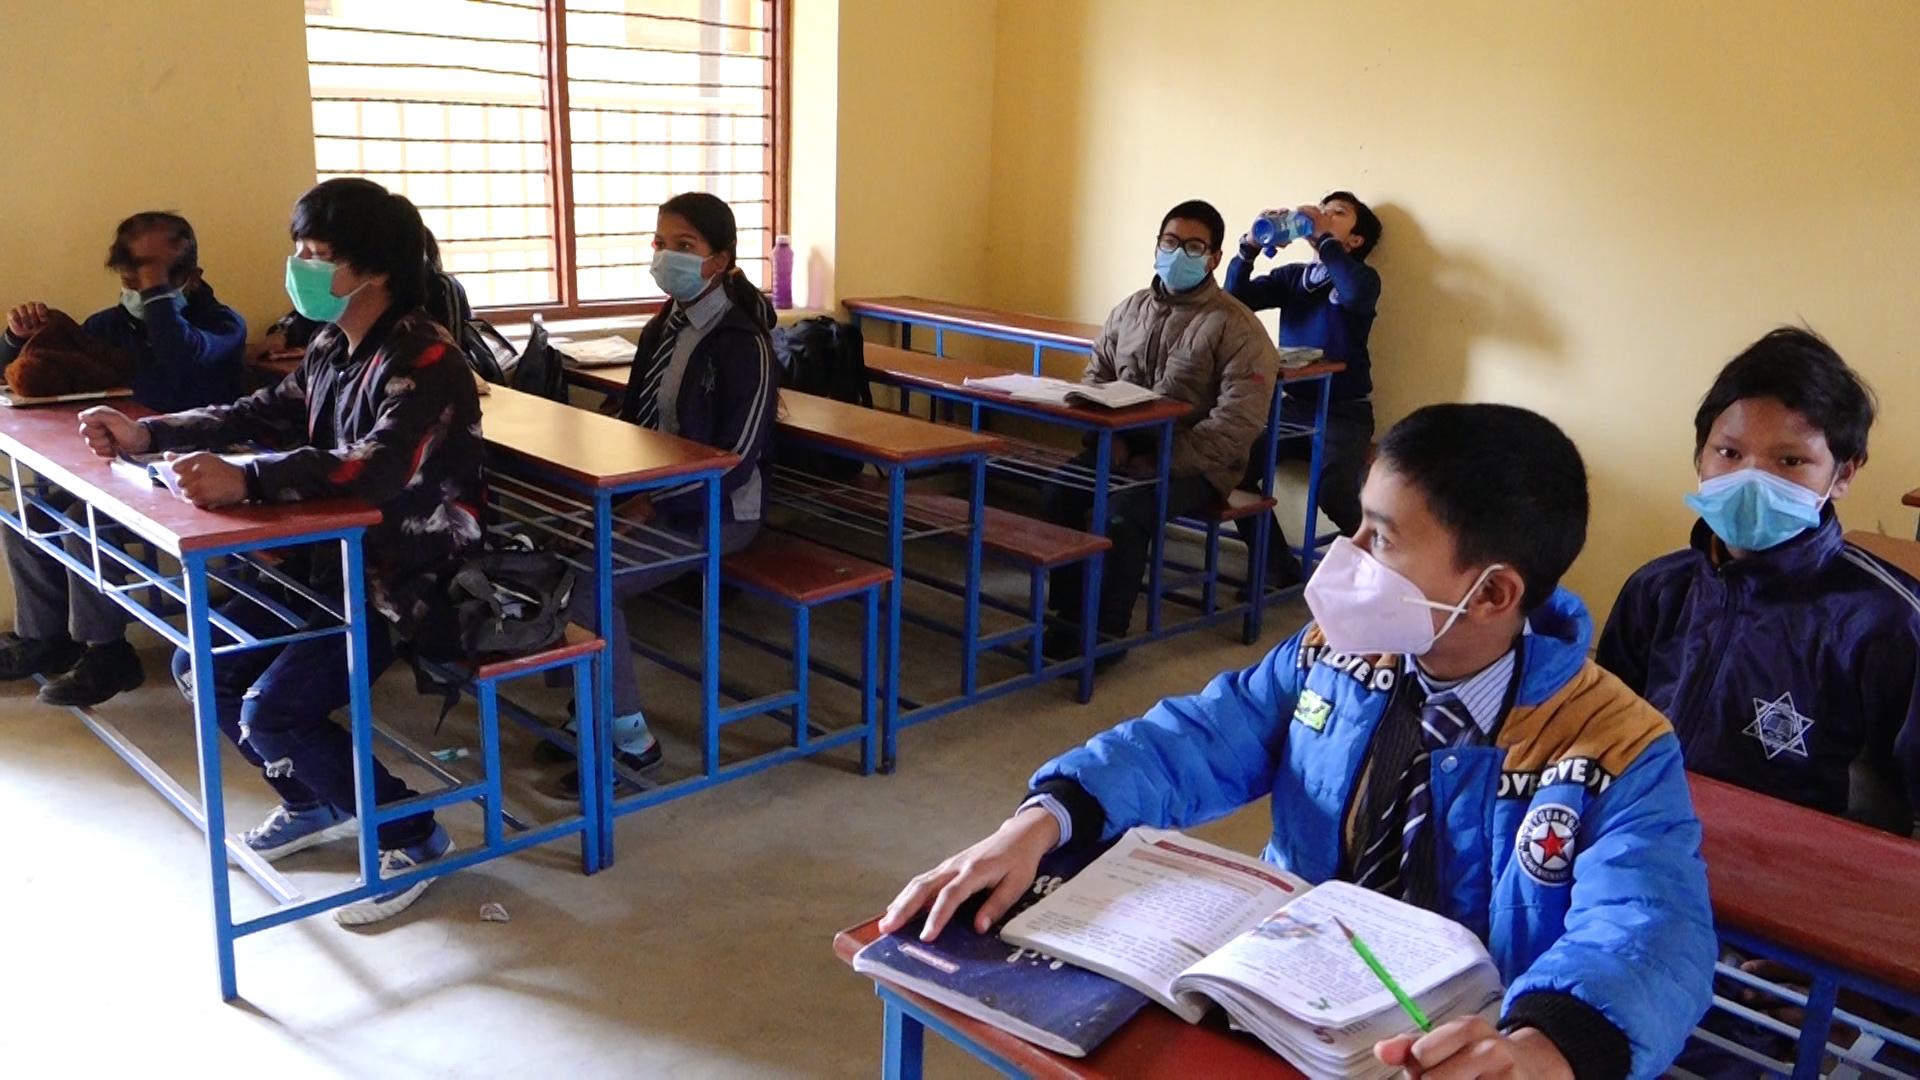 काठमाडाैं महानगरले दियो १० असोजबाट विद्यालय खोल्ने अनुमति, यस्तो छ मापदण्ड